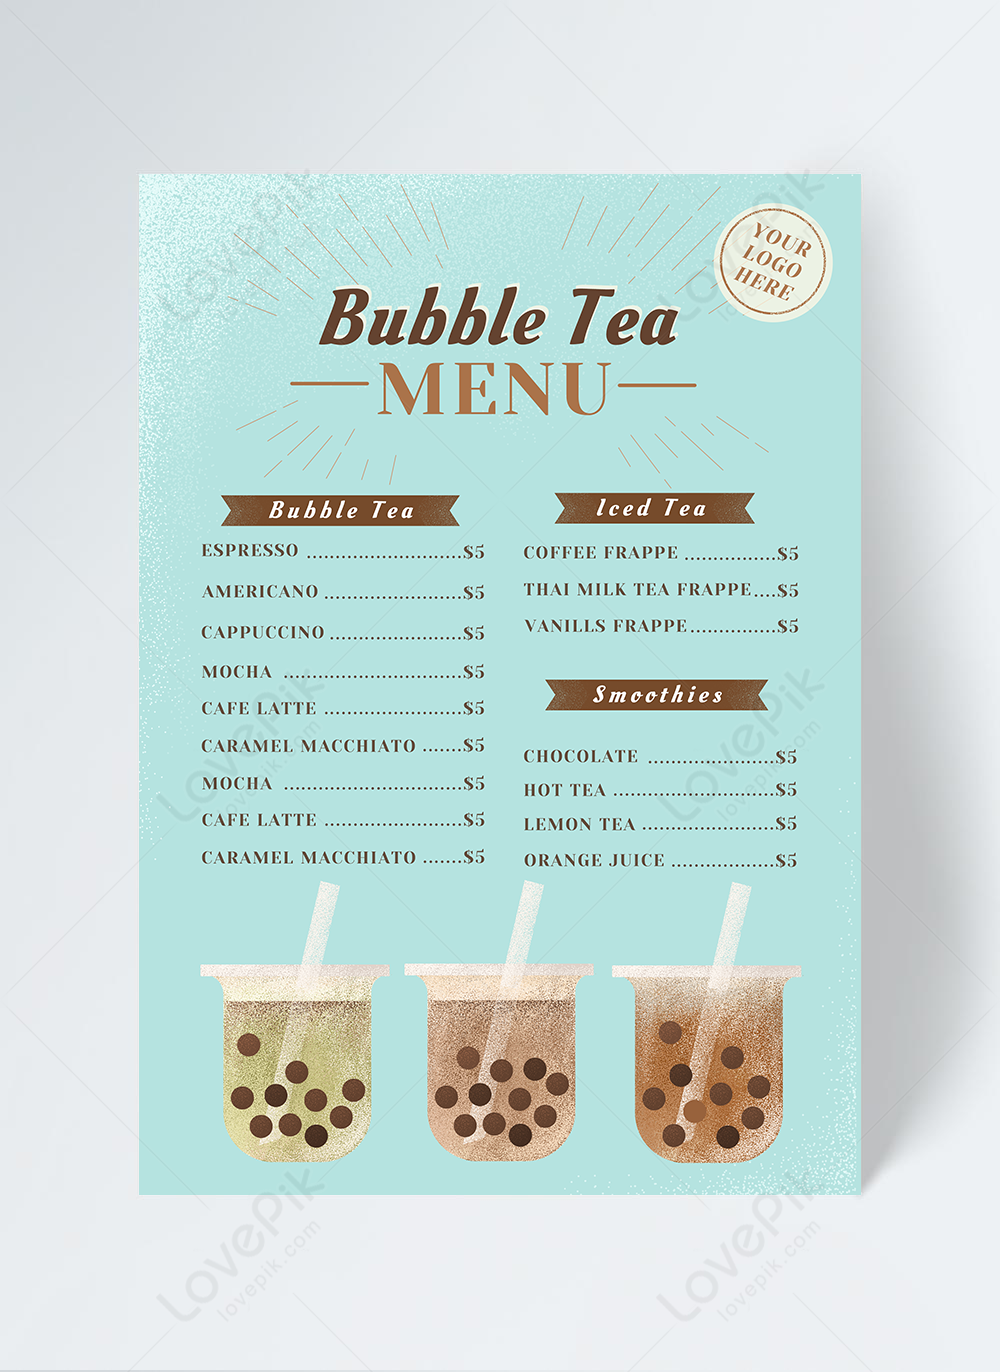 Thiết kế menu trà sữa: Bạn đang muốn thiết kế menu trà sữa độc đáo và thu hút khách hàng? Hãy xem bức ảnh của chúng tôi, chúng tôi sẽ giúp bạn tạo ra một thiết kế menu trà sữa đẹp mắt, phù hợp với phong cách của cửa hàng của bạn và thu hút khách hàng. Hãy cùng chúng tôi tìm hiểu các mẹo thiết kế menu trà sữa để đưa cửa hàng của bạn lên một tầm cao mới. 